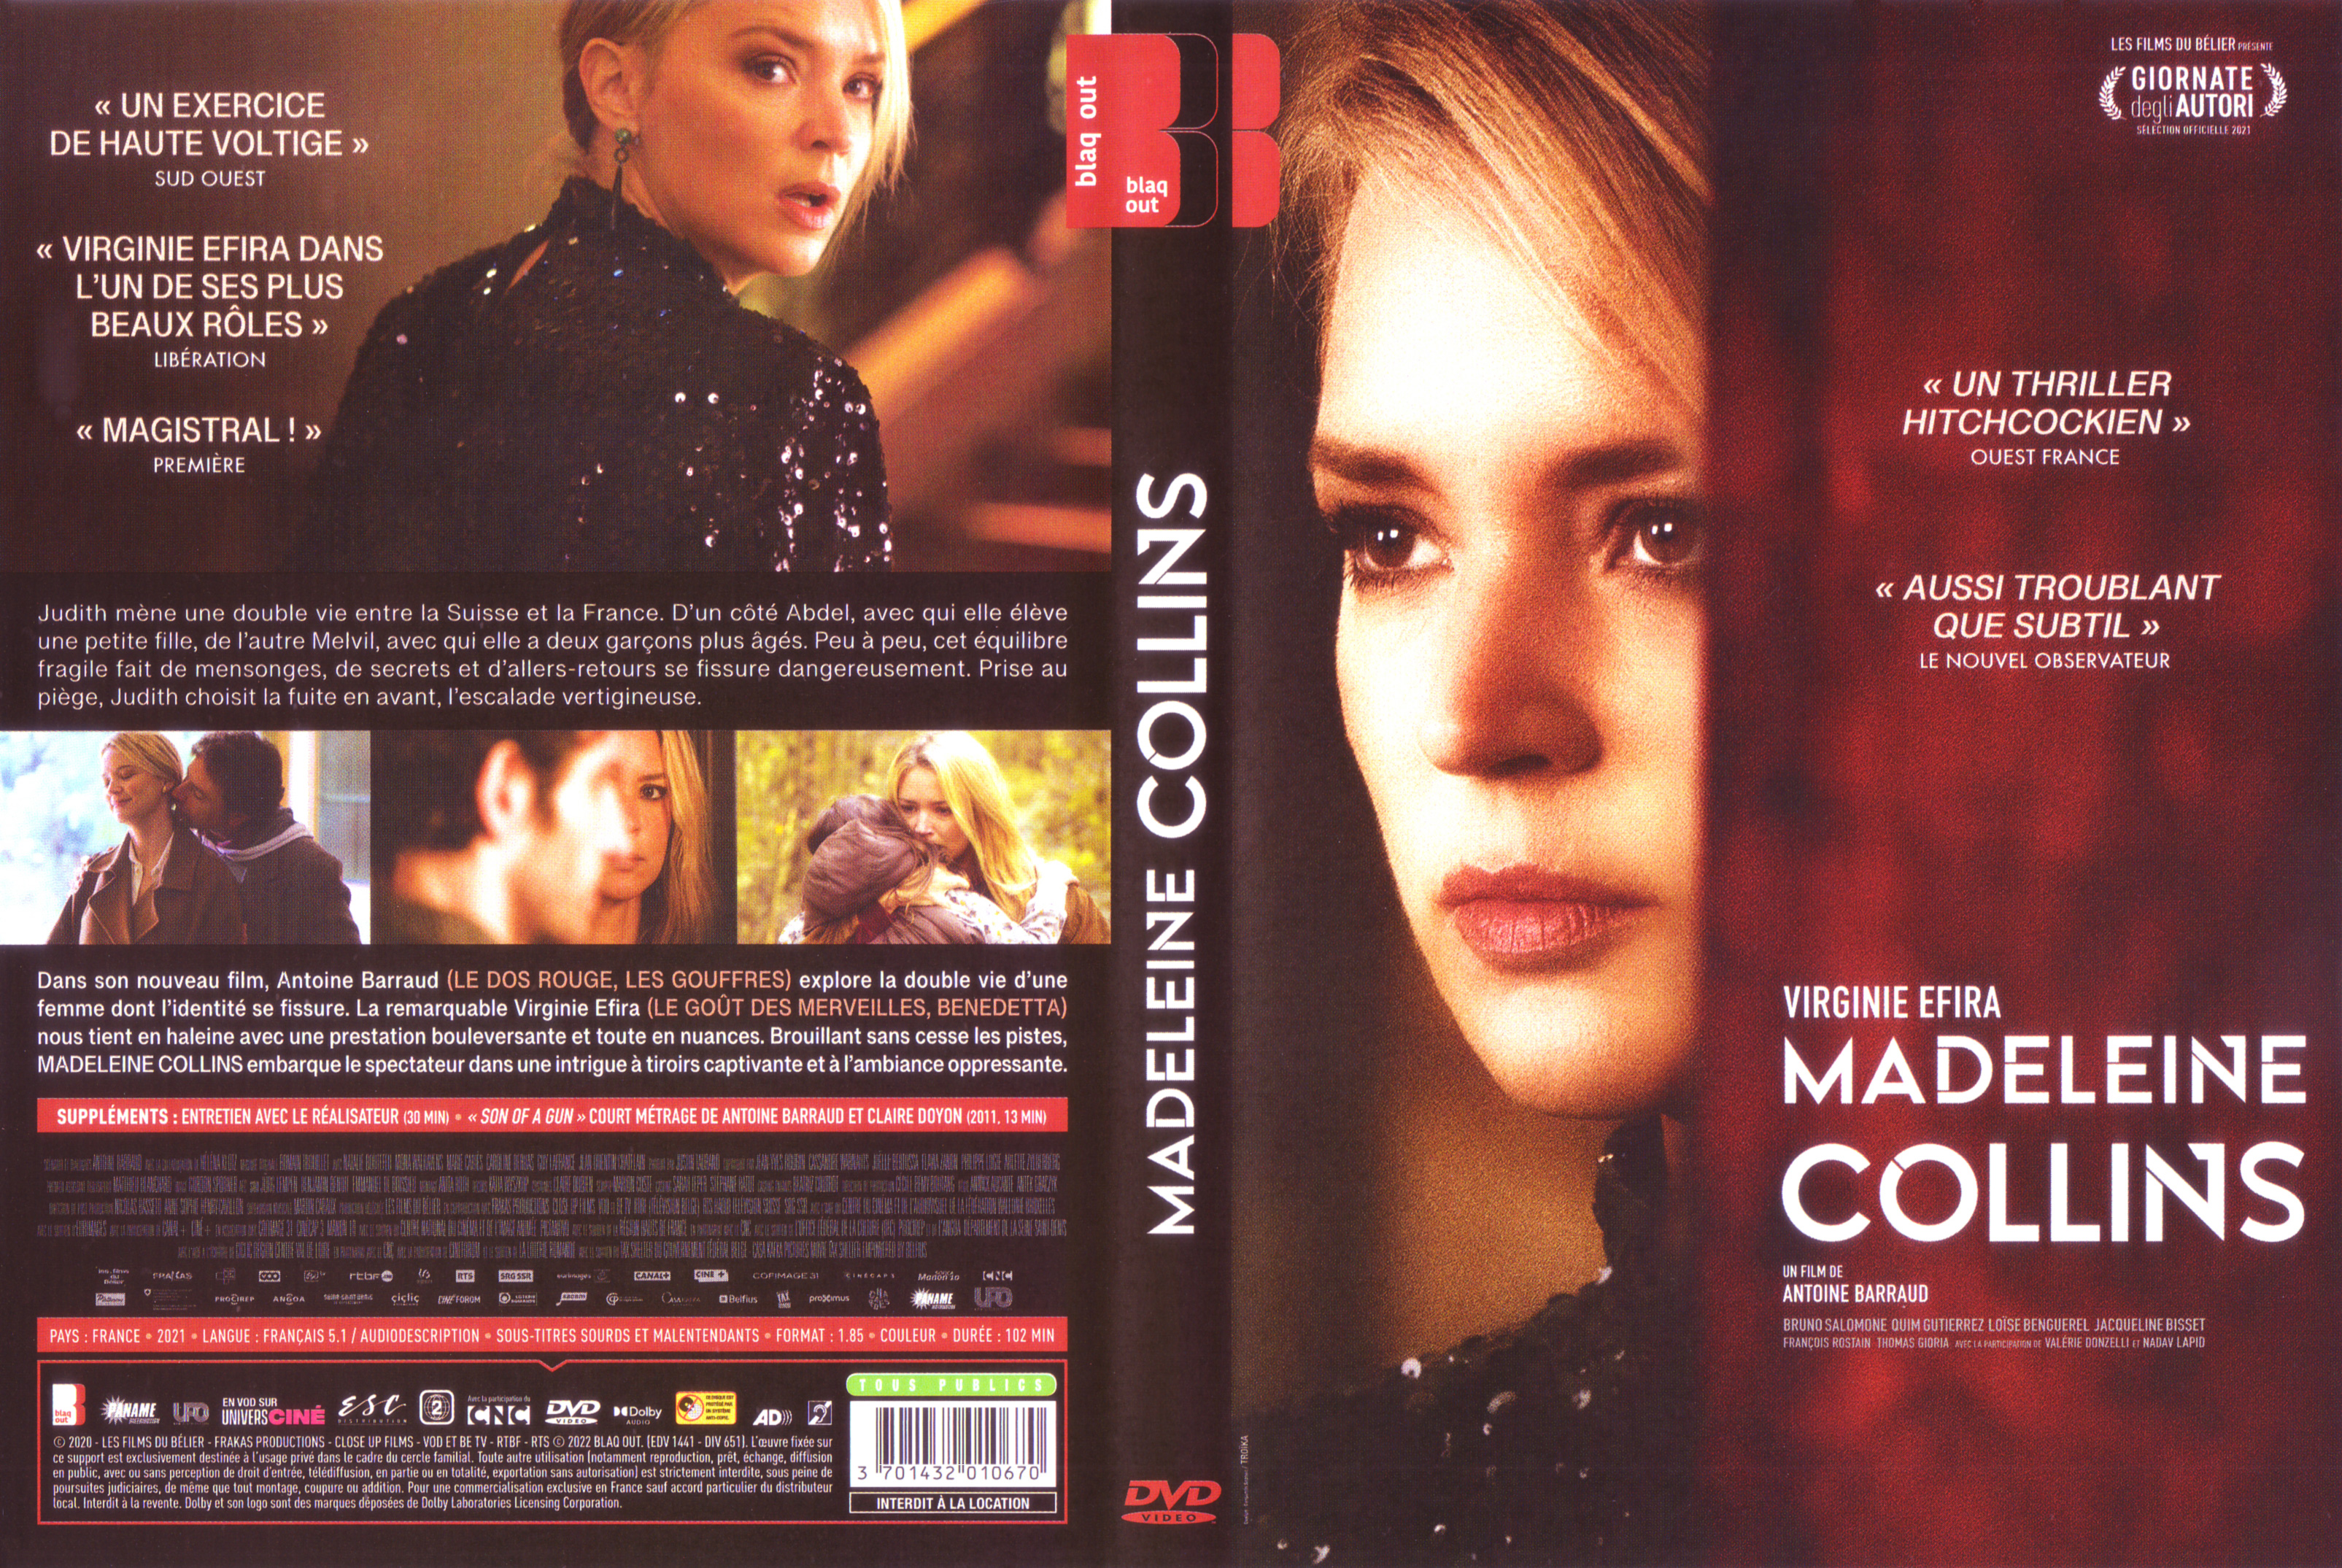 Jaquette DVD Madeleine Collins